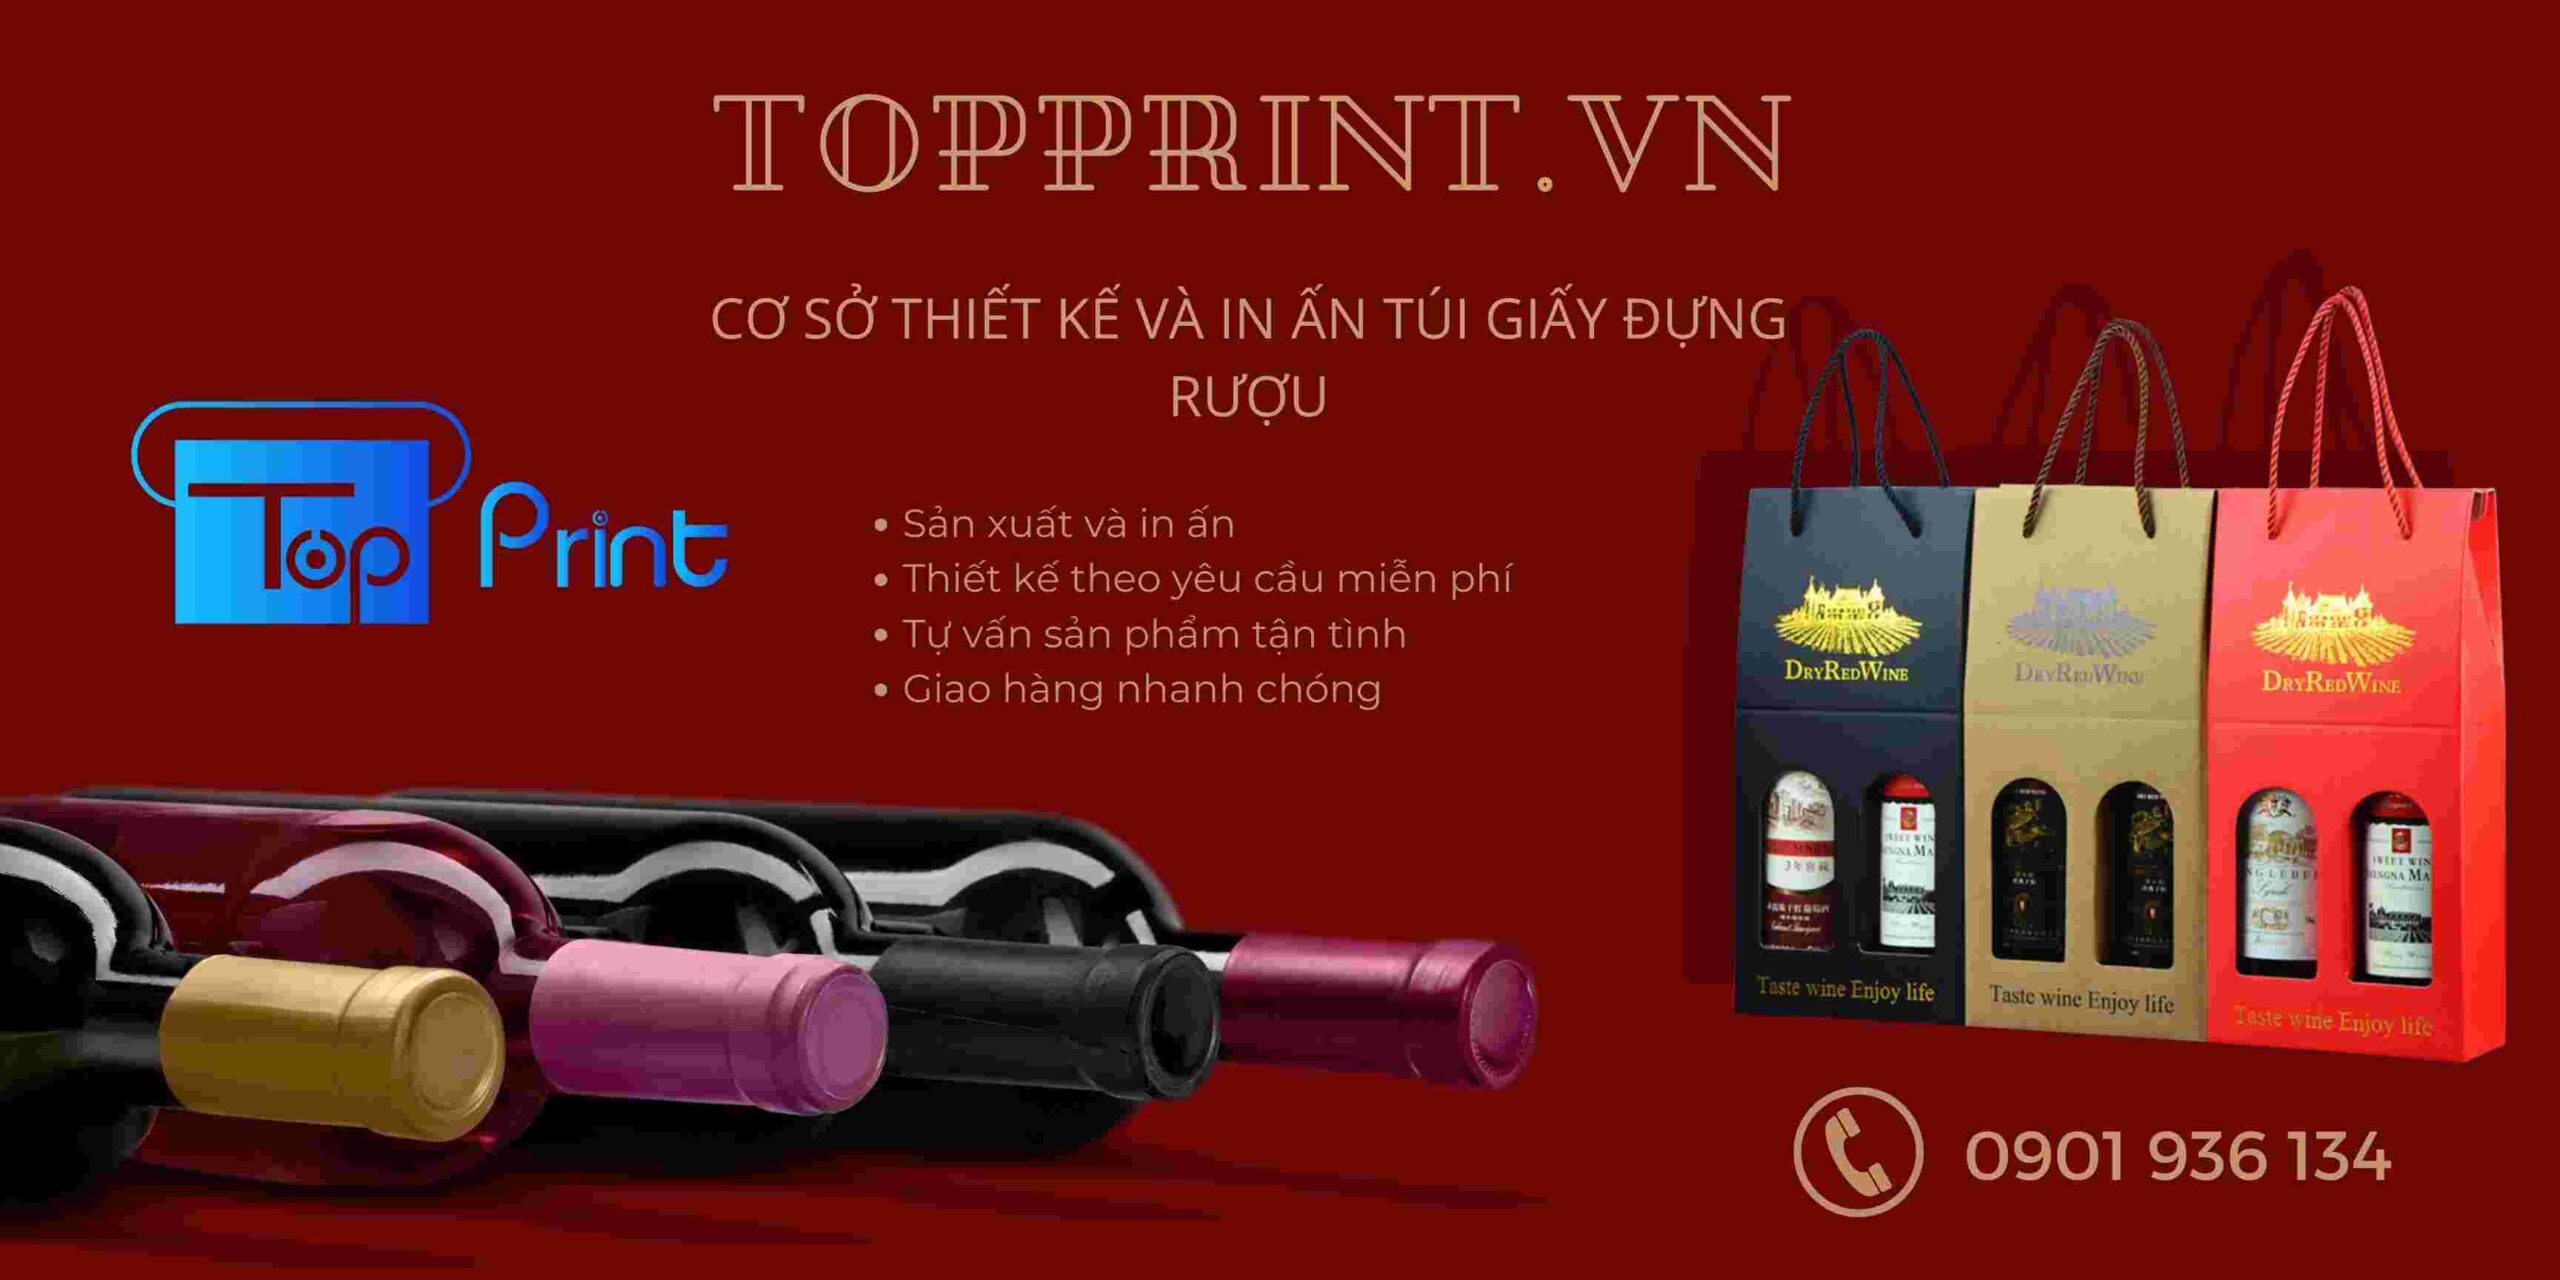 Topprint - Xưởng sản xuất túi giấy đựng rượu giá rẻ Tphcm